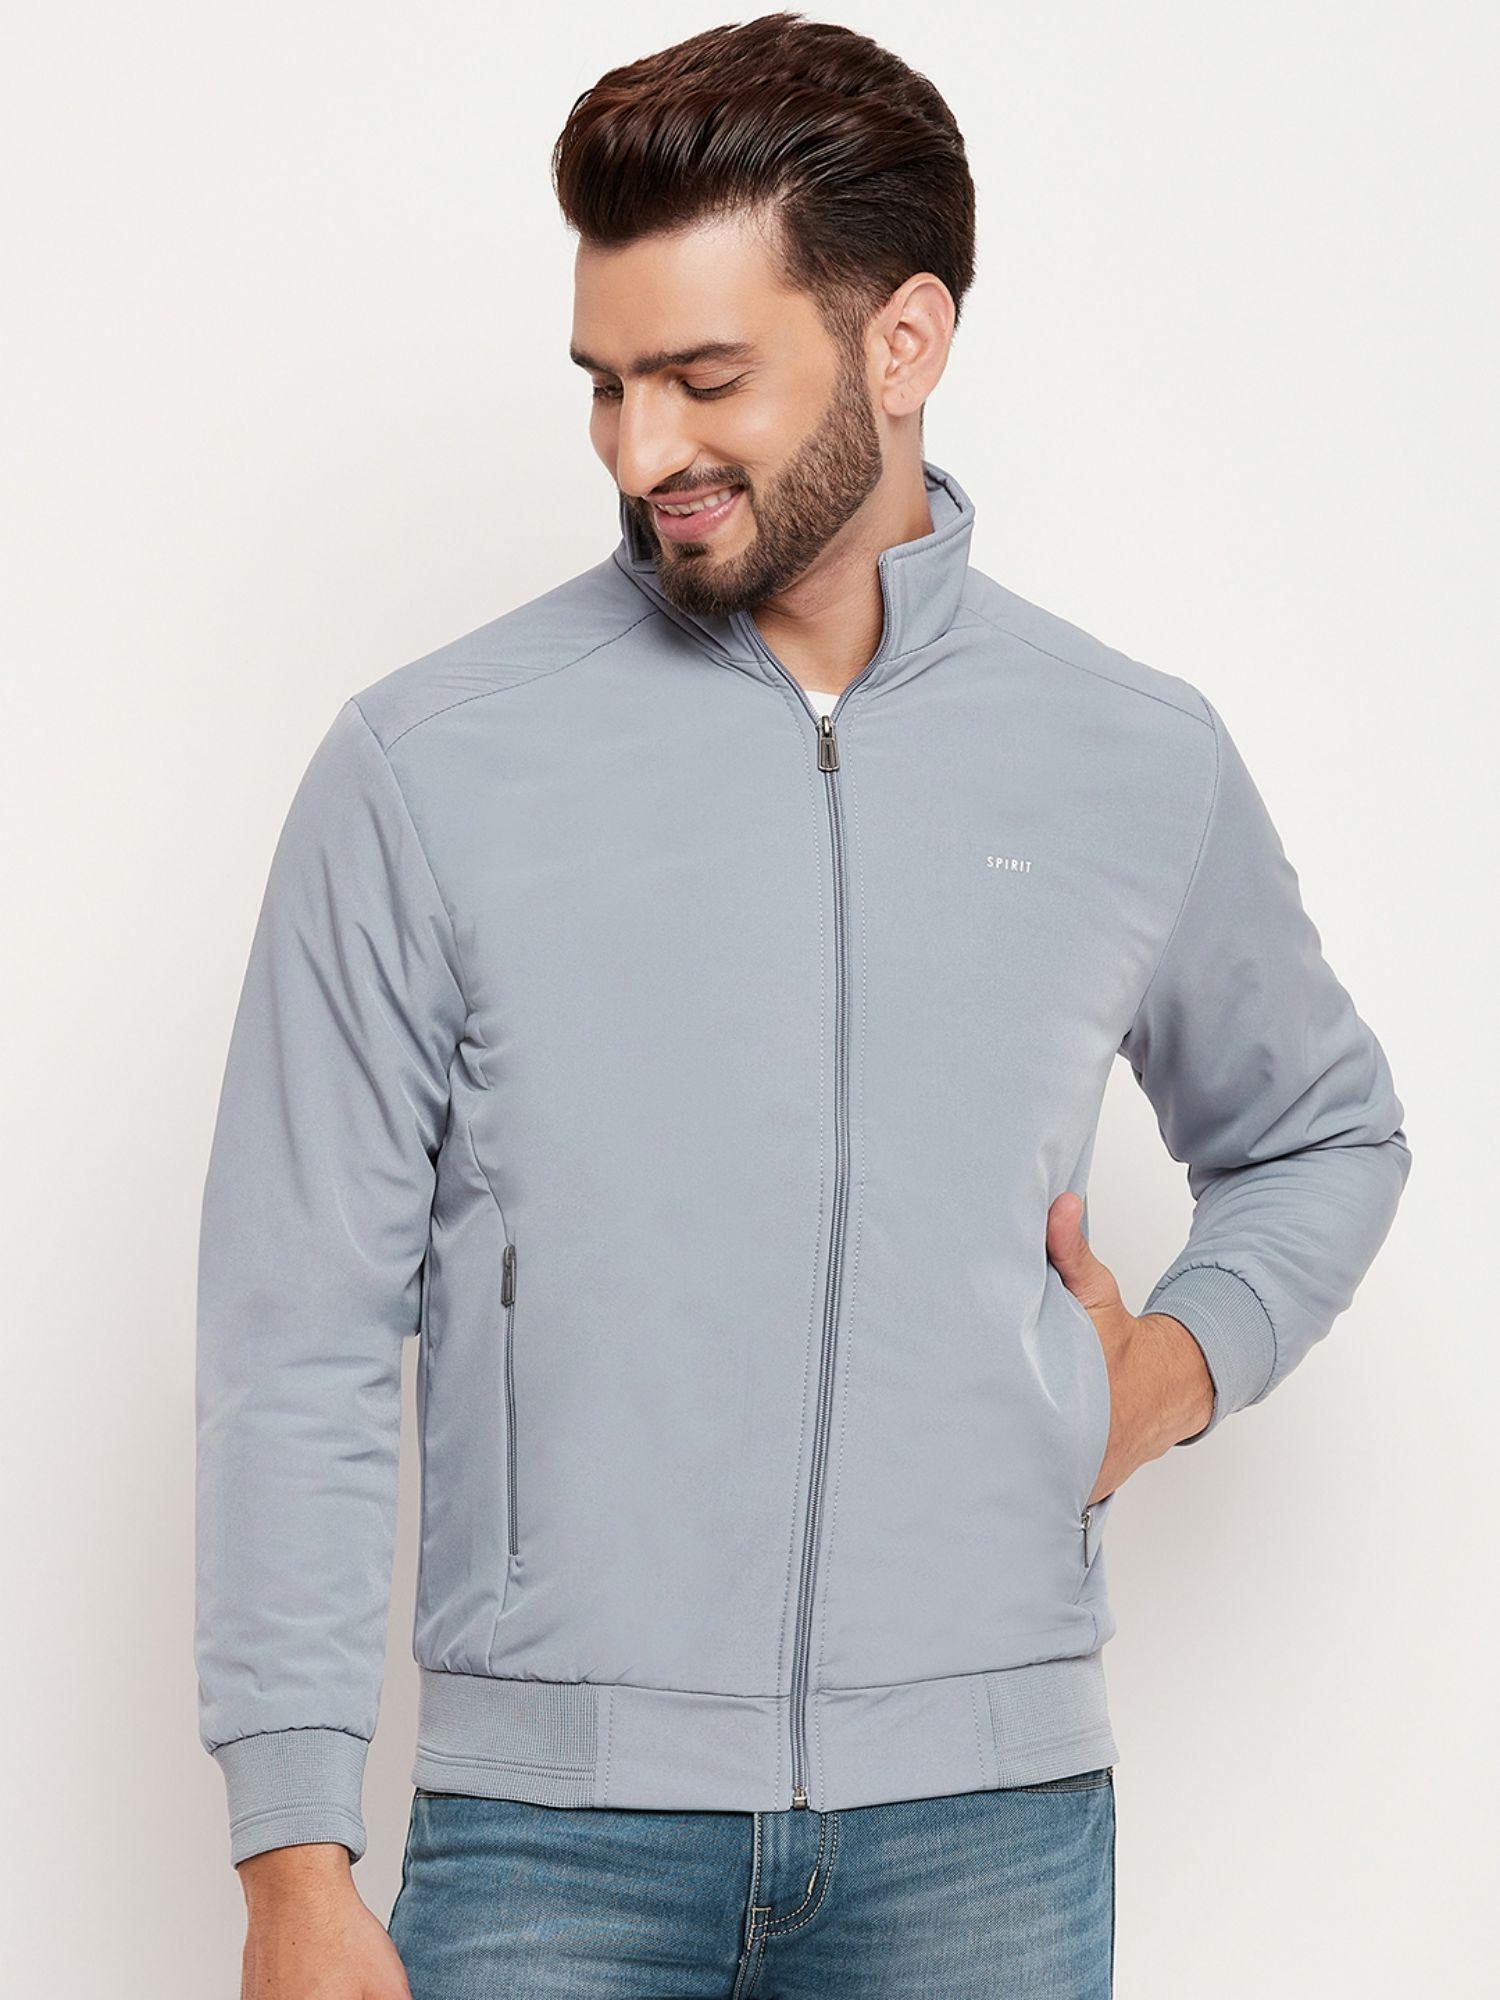 mens light grey solid jacket